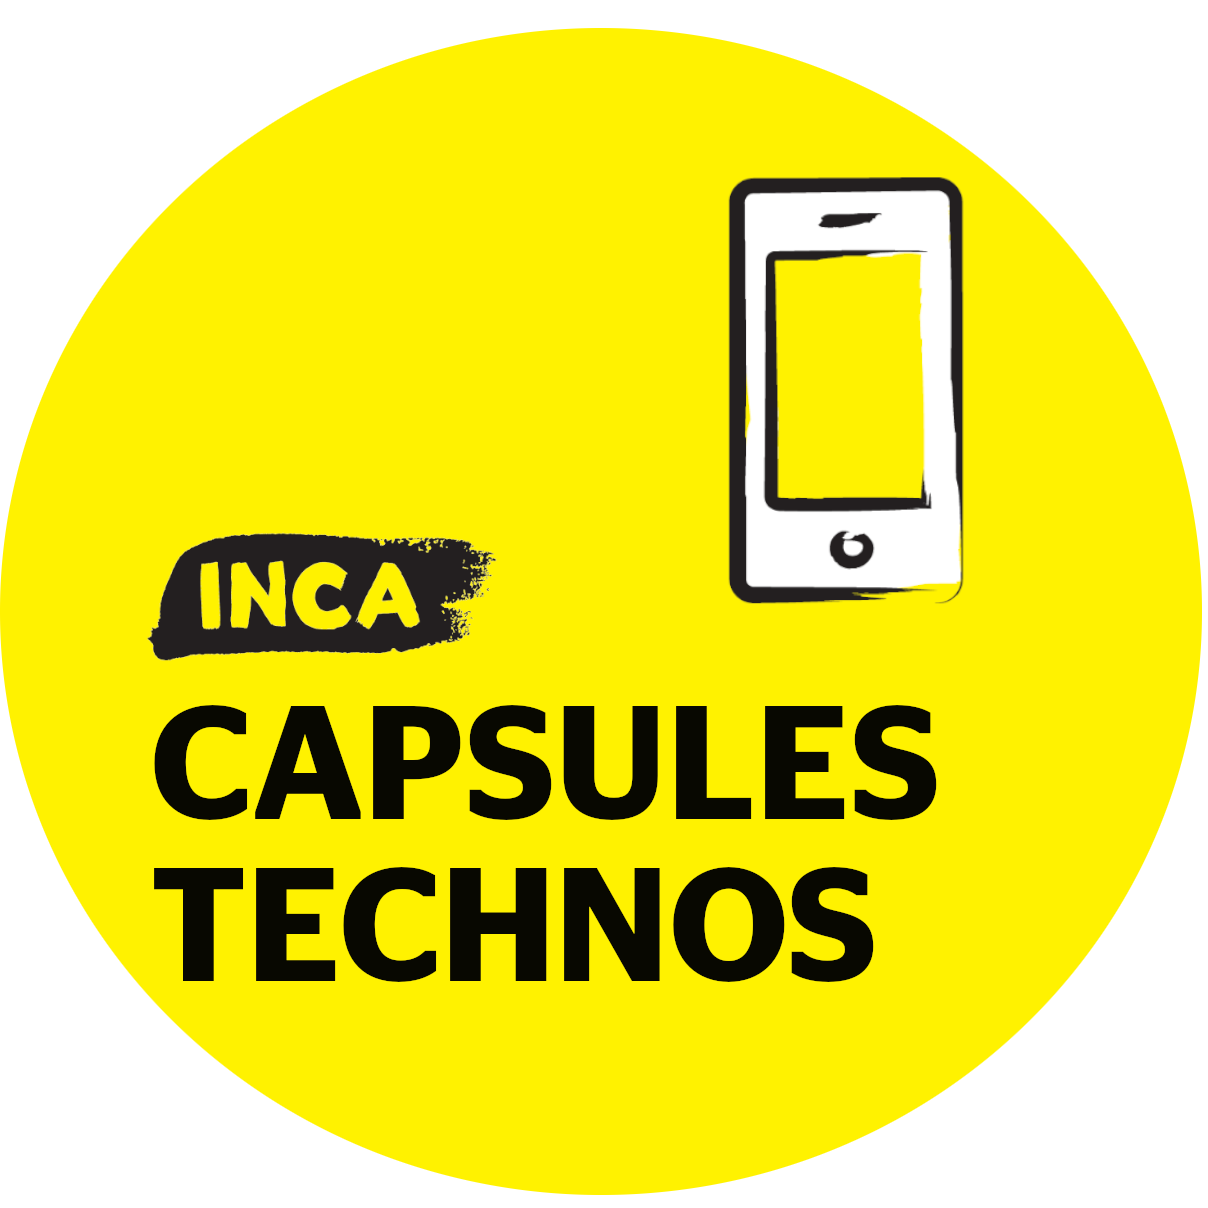 Rond jaune avec un icone de téléphone intelligne et le titre Capsules Technos et le logo d'INCA.